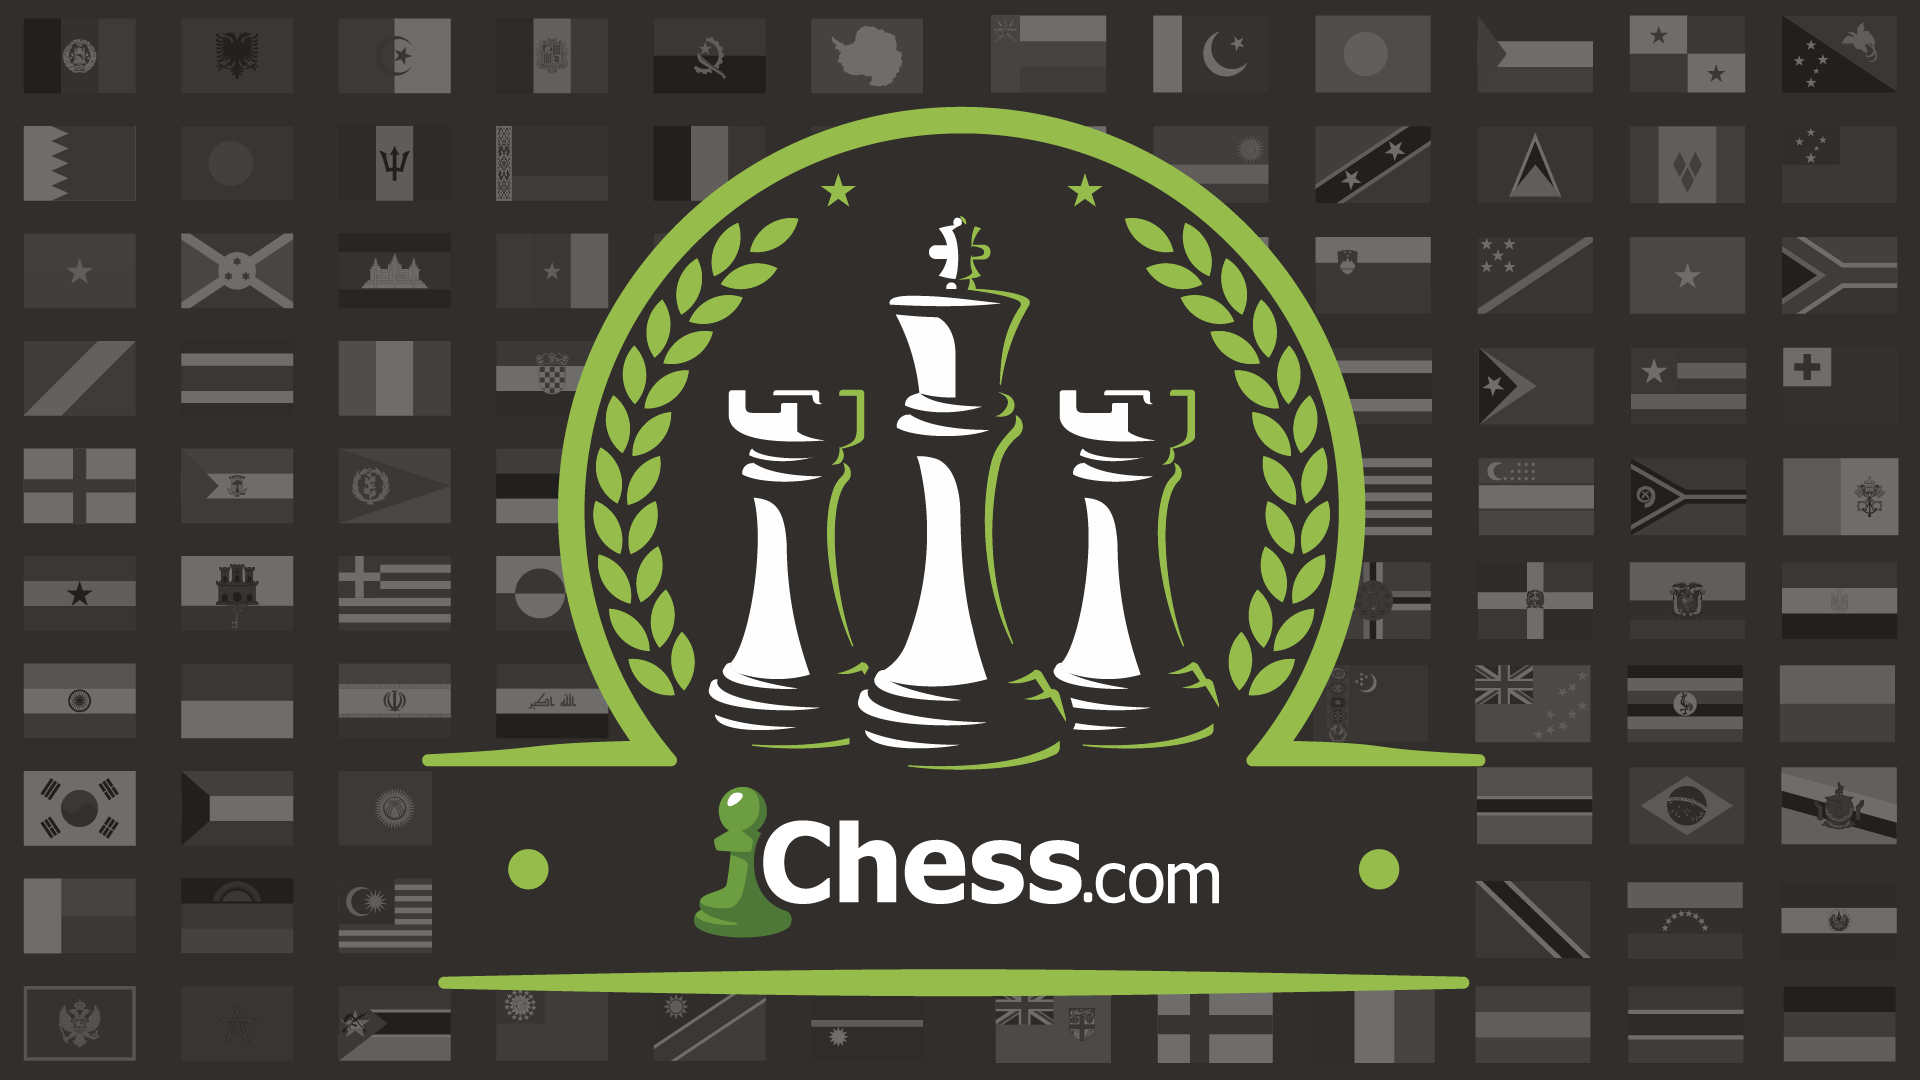 Chess.com informa de problemas con los servidores debido a la afluencia masiva de usuarios